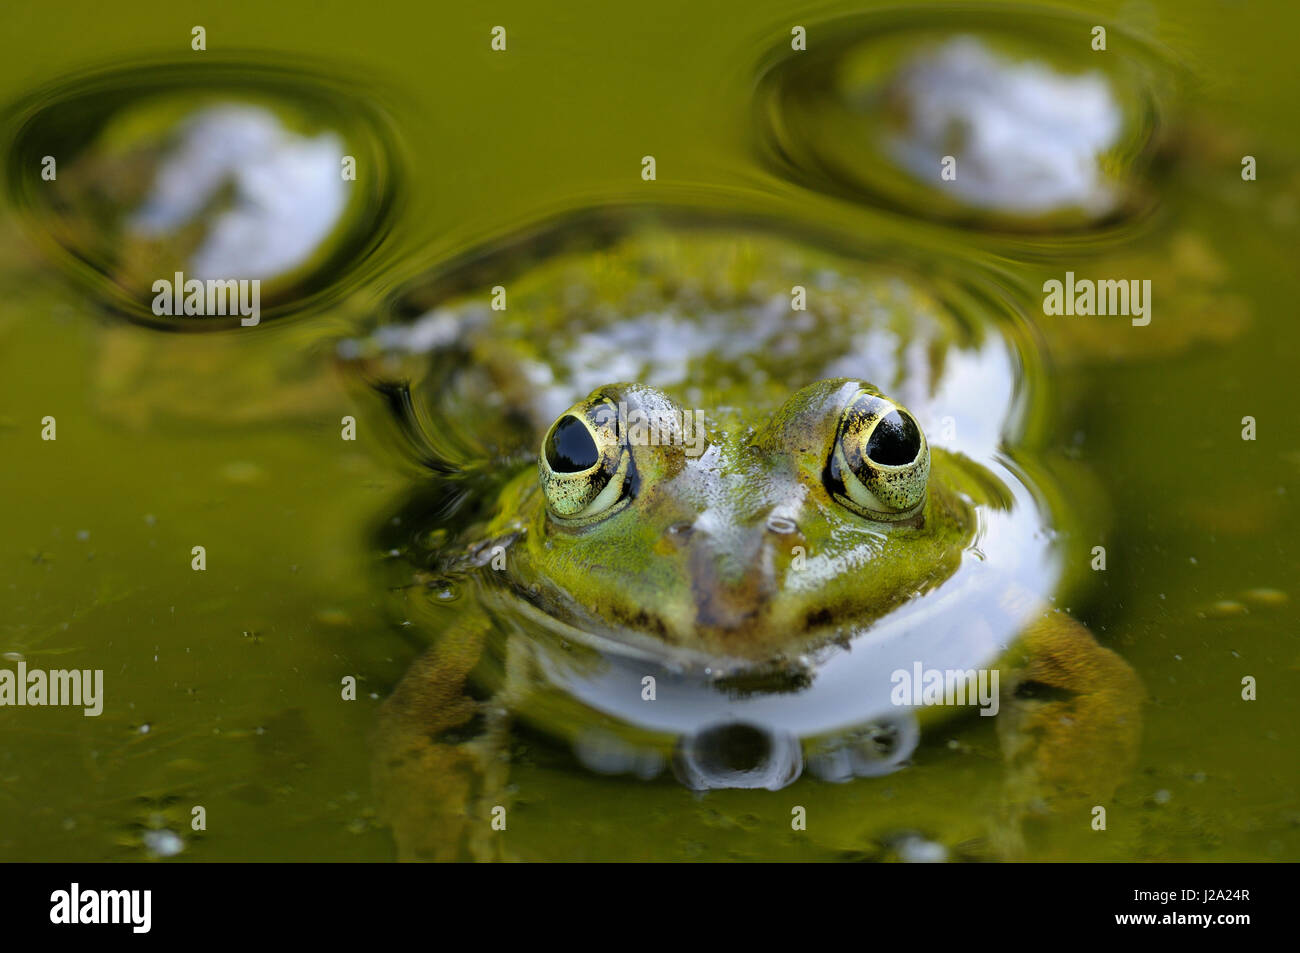 Rana verde in con specchio d acqua in close-up Foto Stock